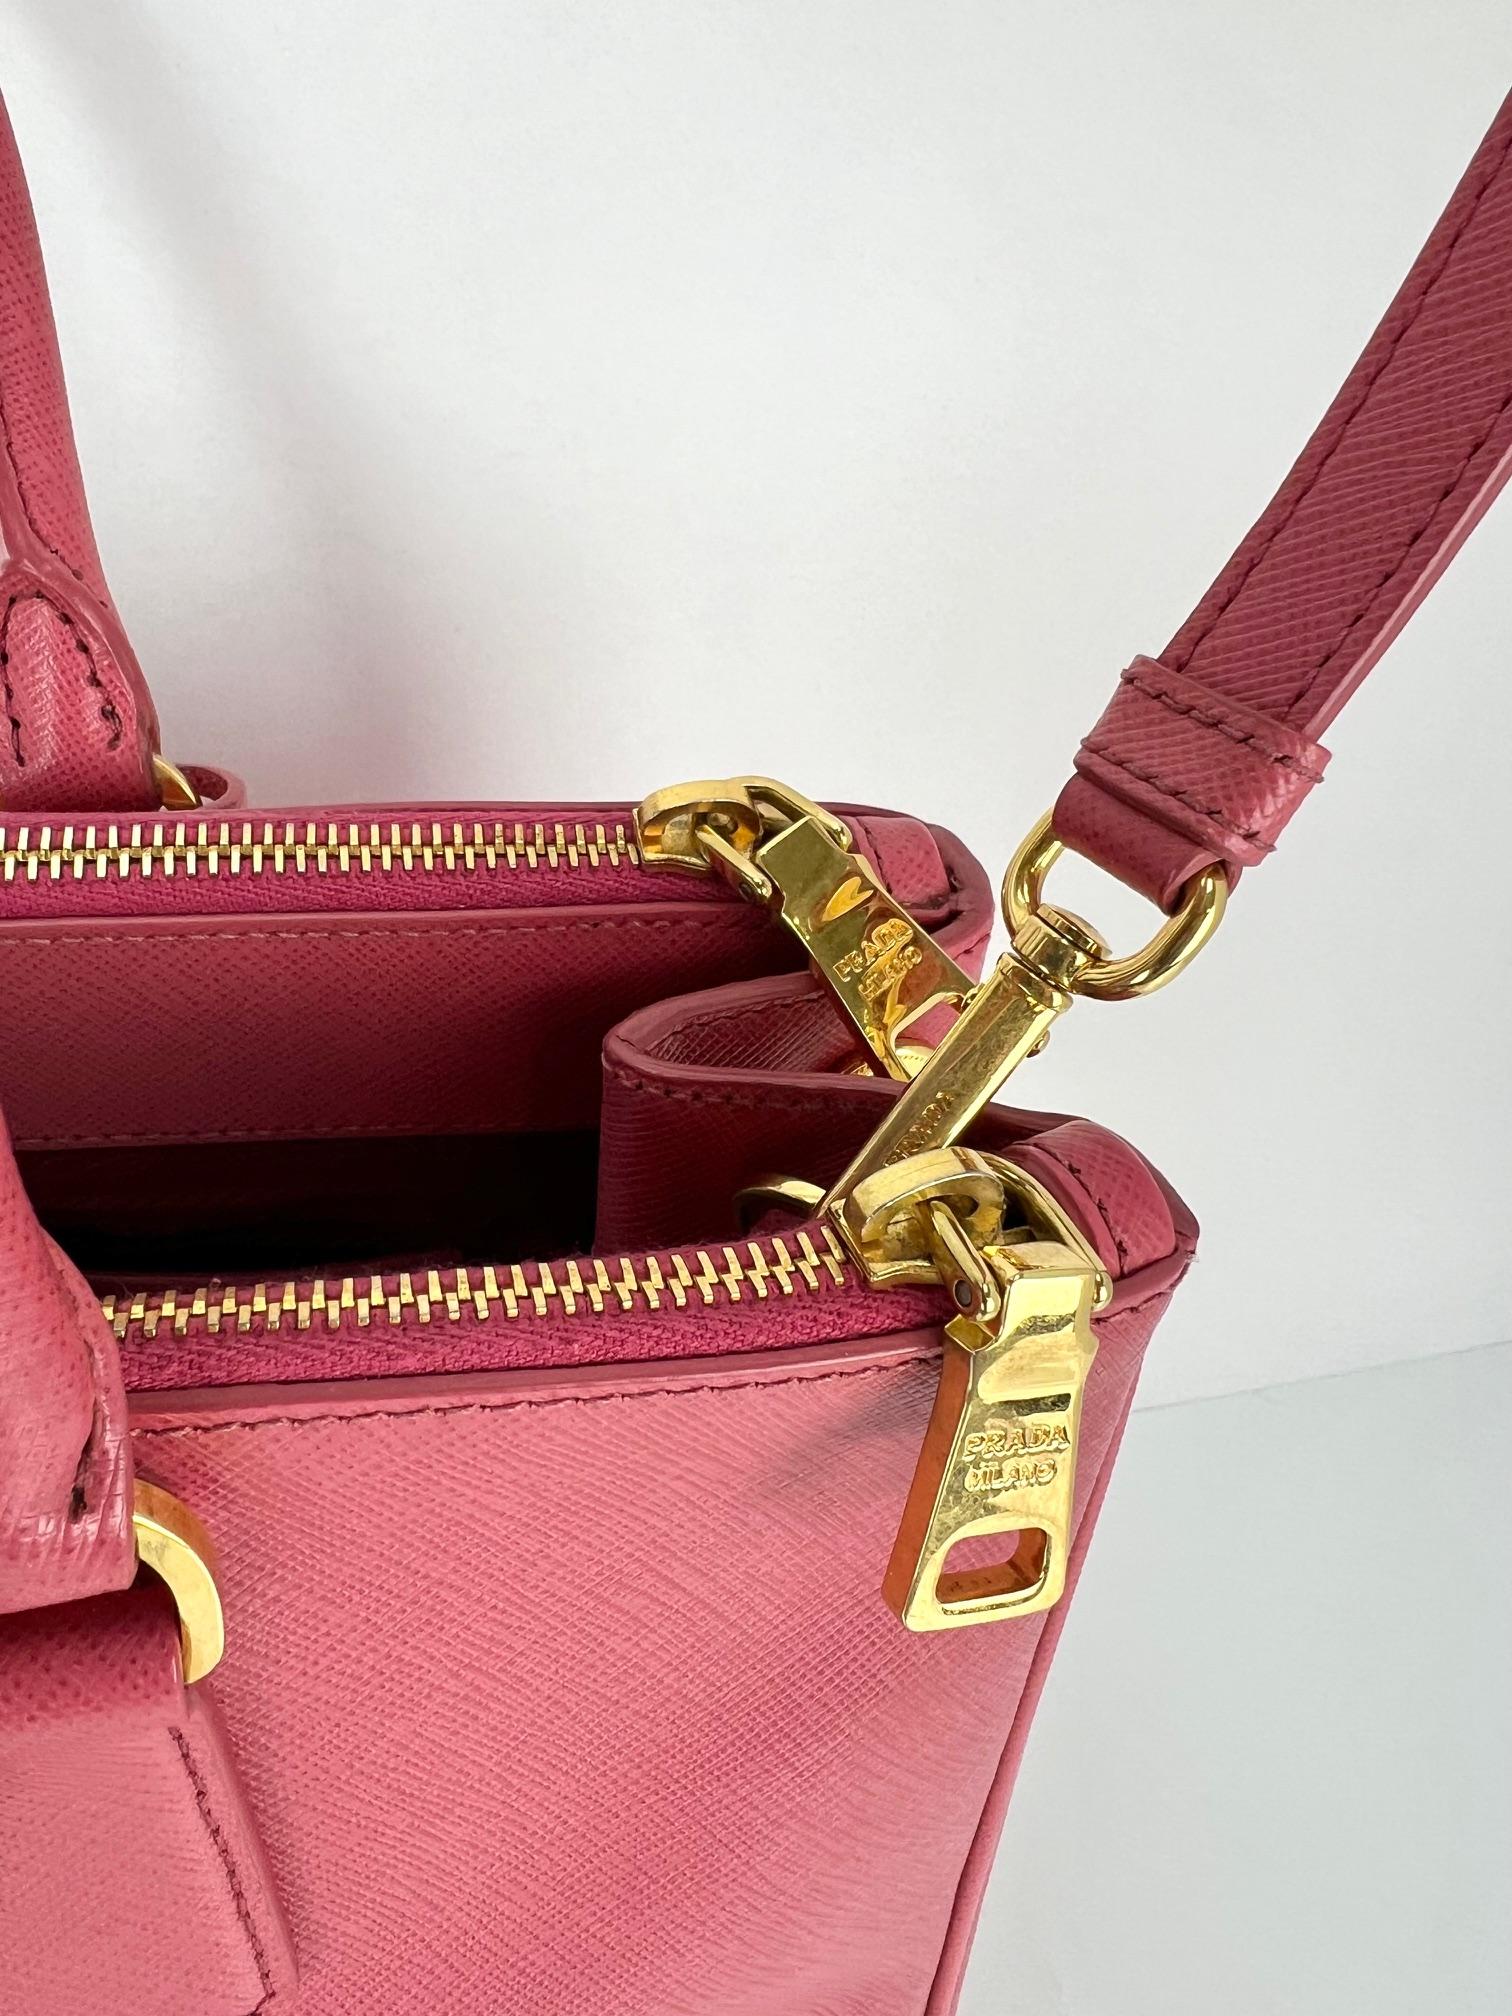 Prada Large Galleria Saffiano Leather Dark Pink Shoulder Bag For Sale 6